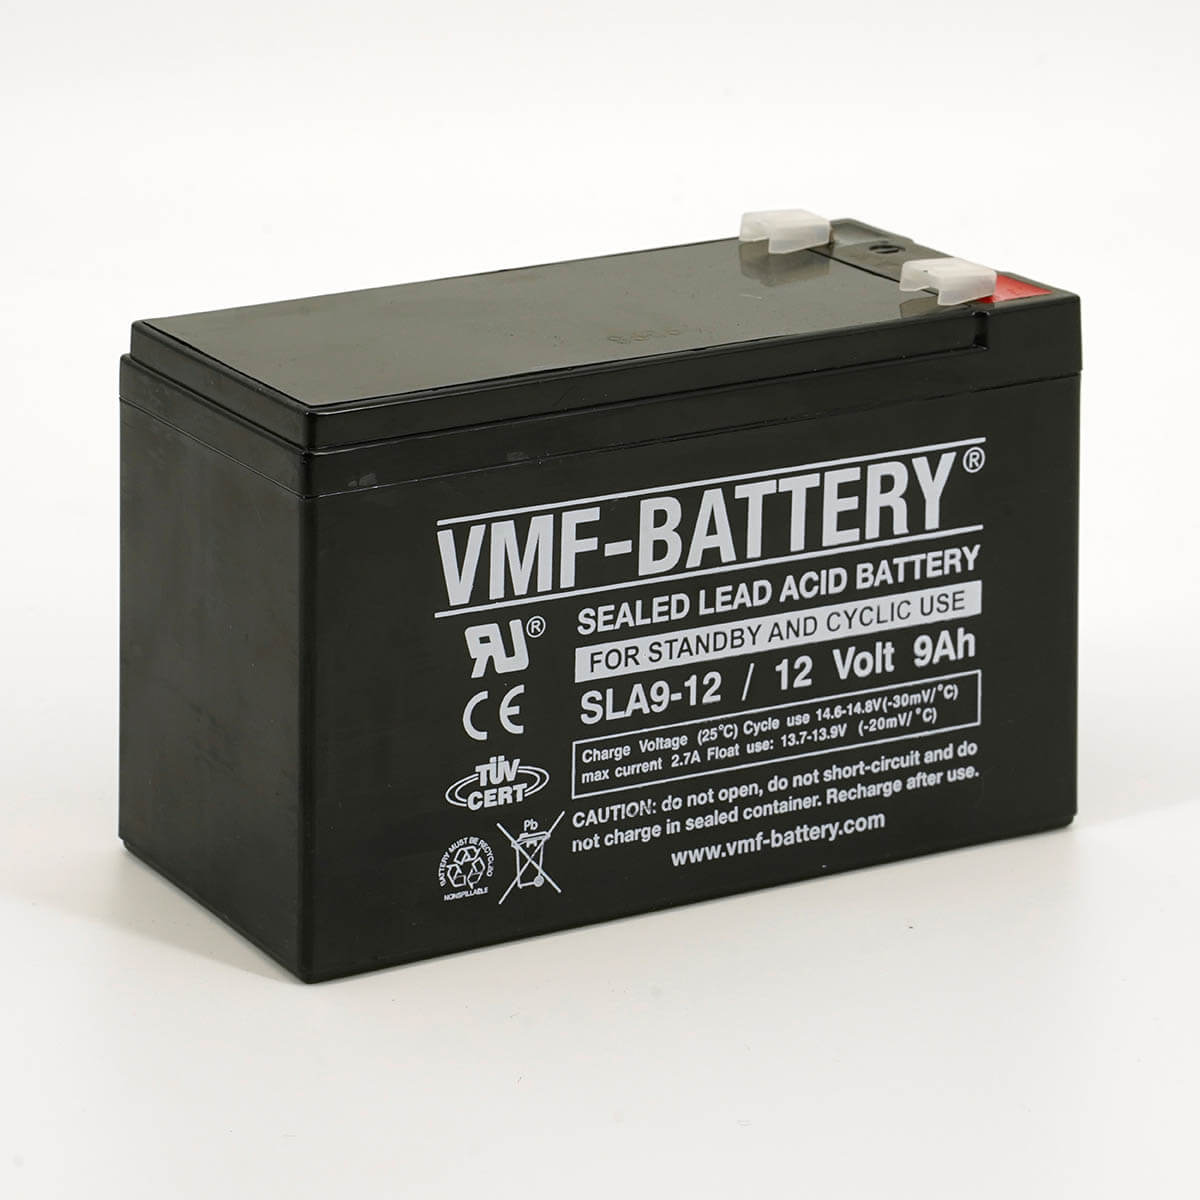 302 1009 100 VMF SLA 9 12 Deep Cycle Lead Acid Battery 12v 9Ah V 01